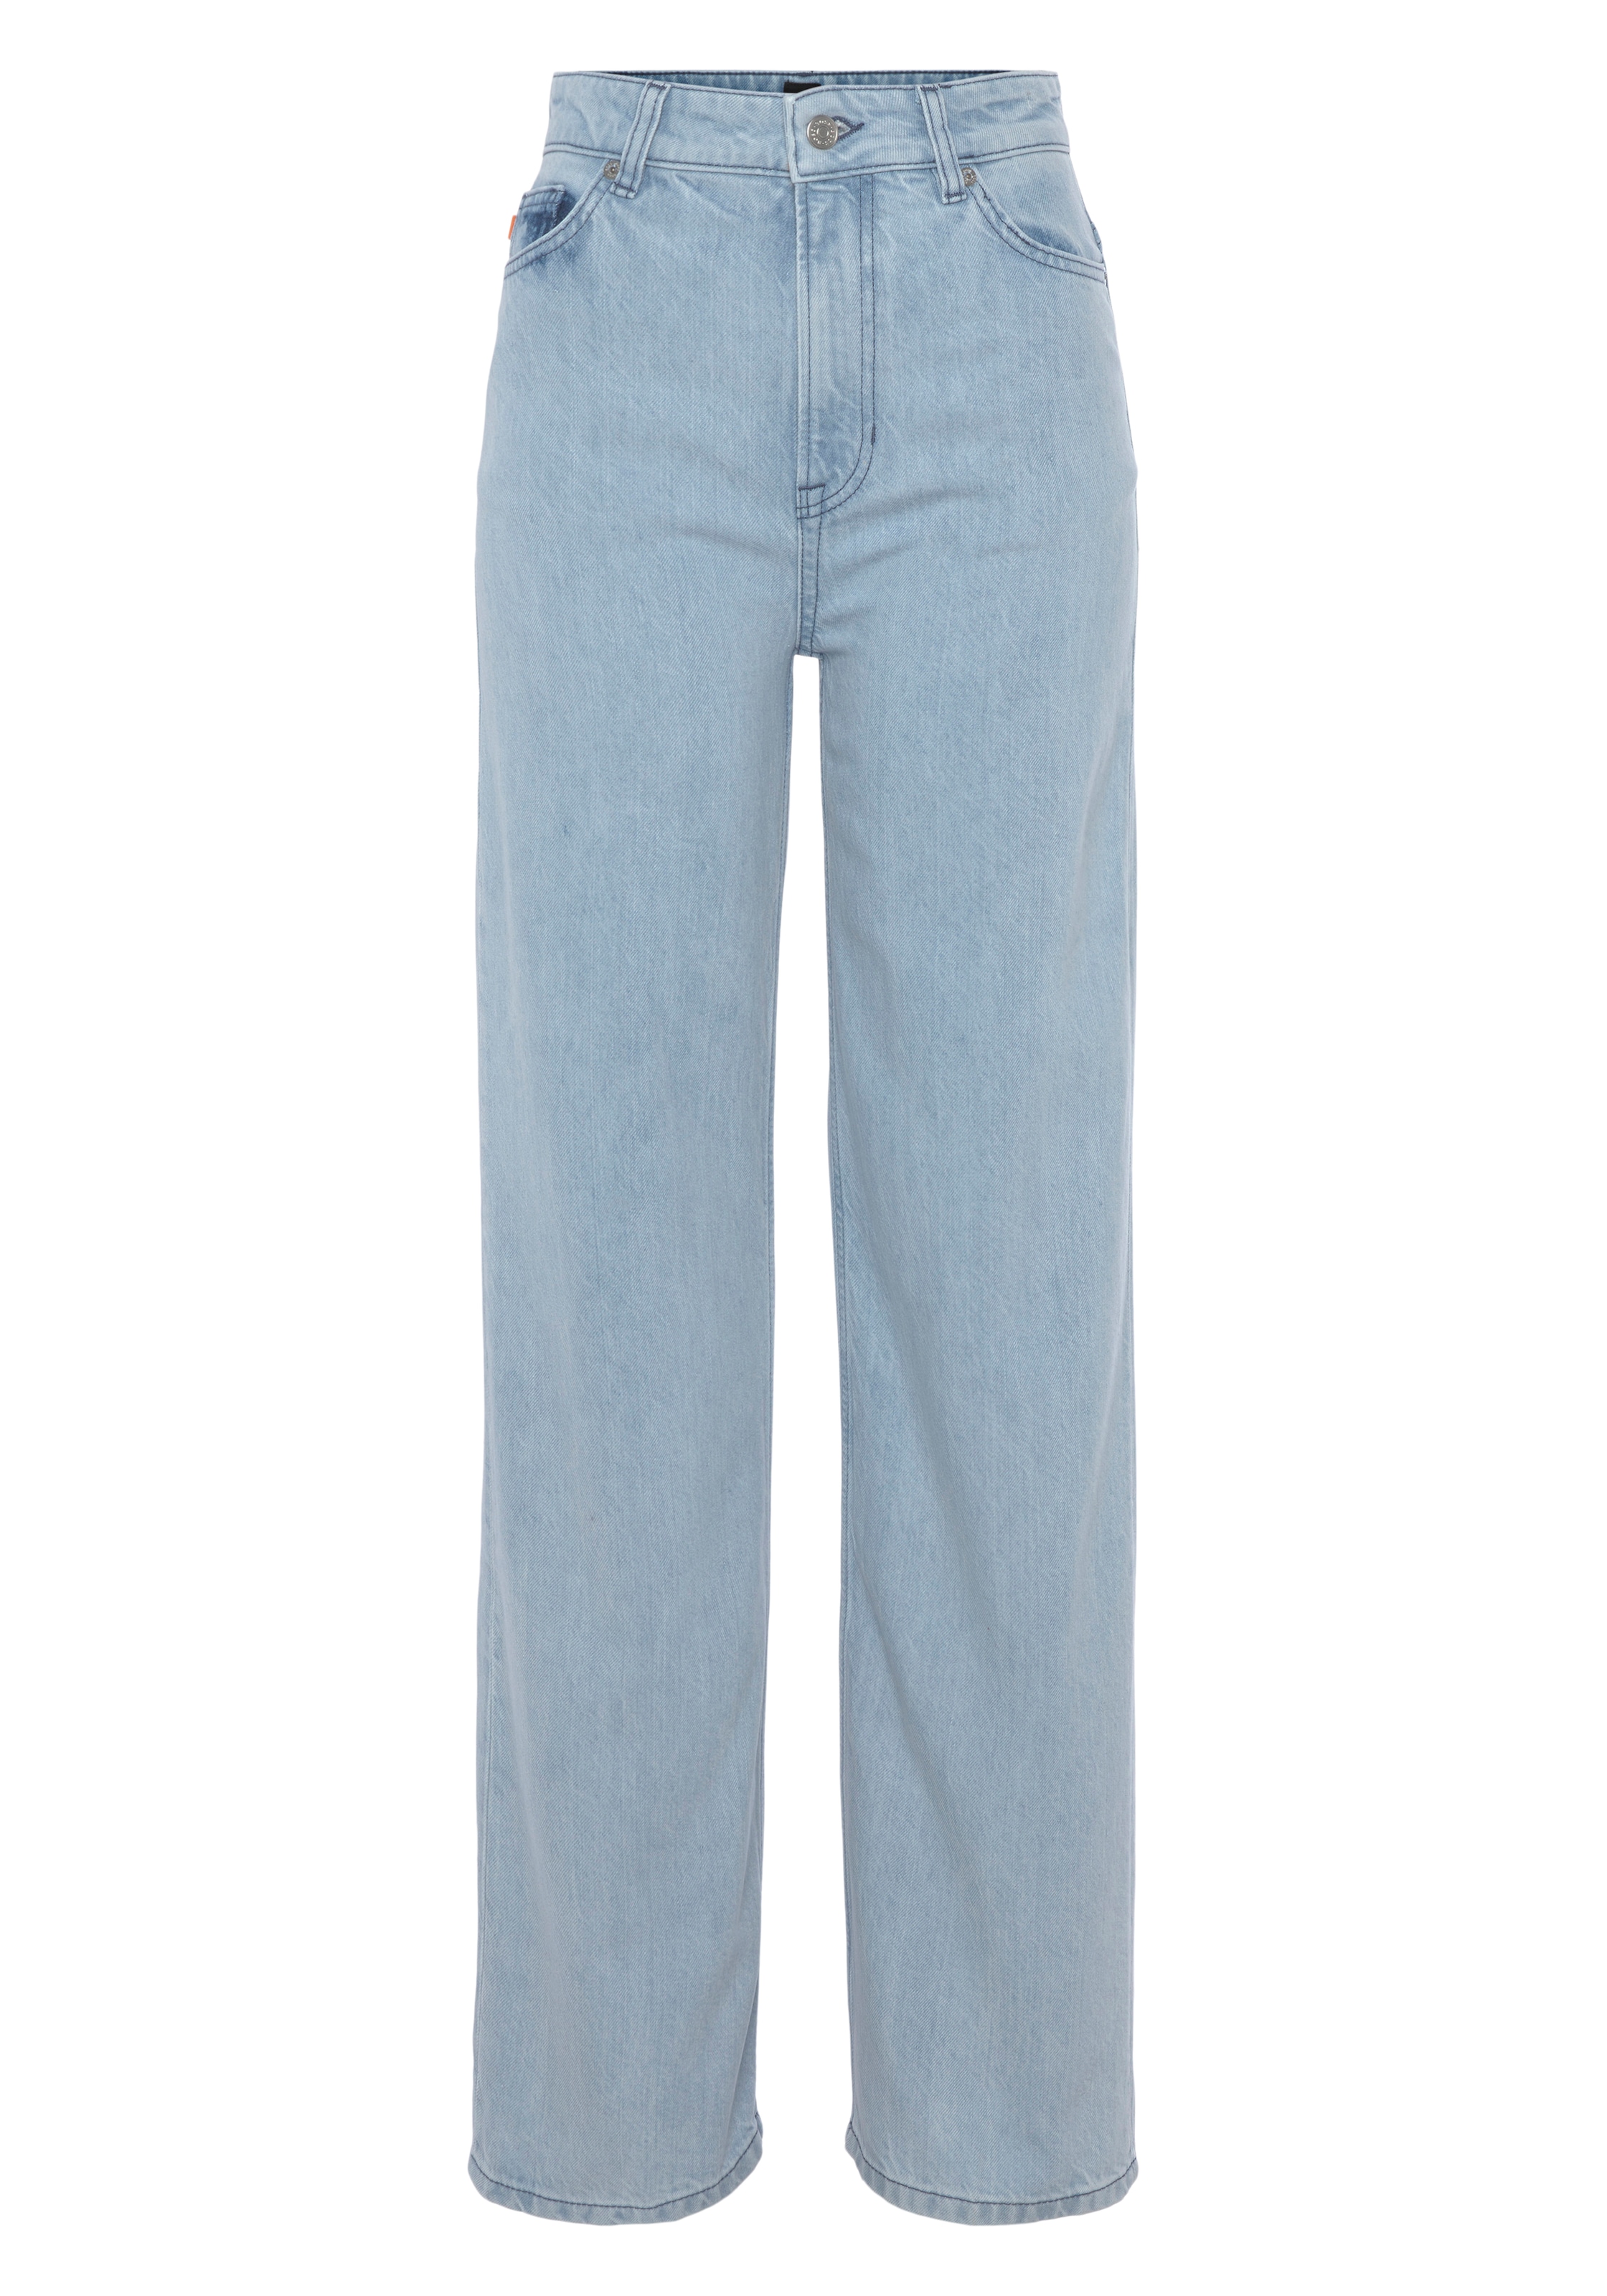 BOSS ORANGE Waist Premium im »Marlene Jeans 5-Pocket-Style Rise Denim High Hochbund Jeans«, Weite High ♕ bei